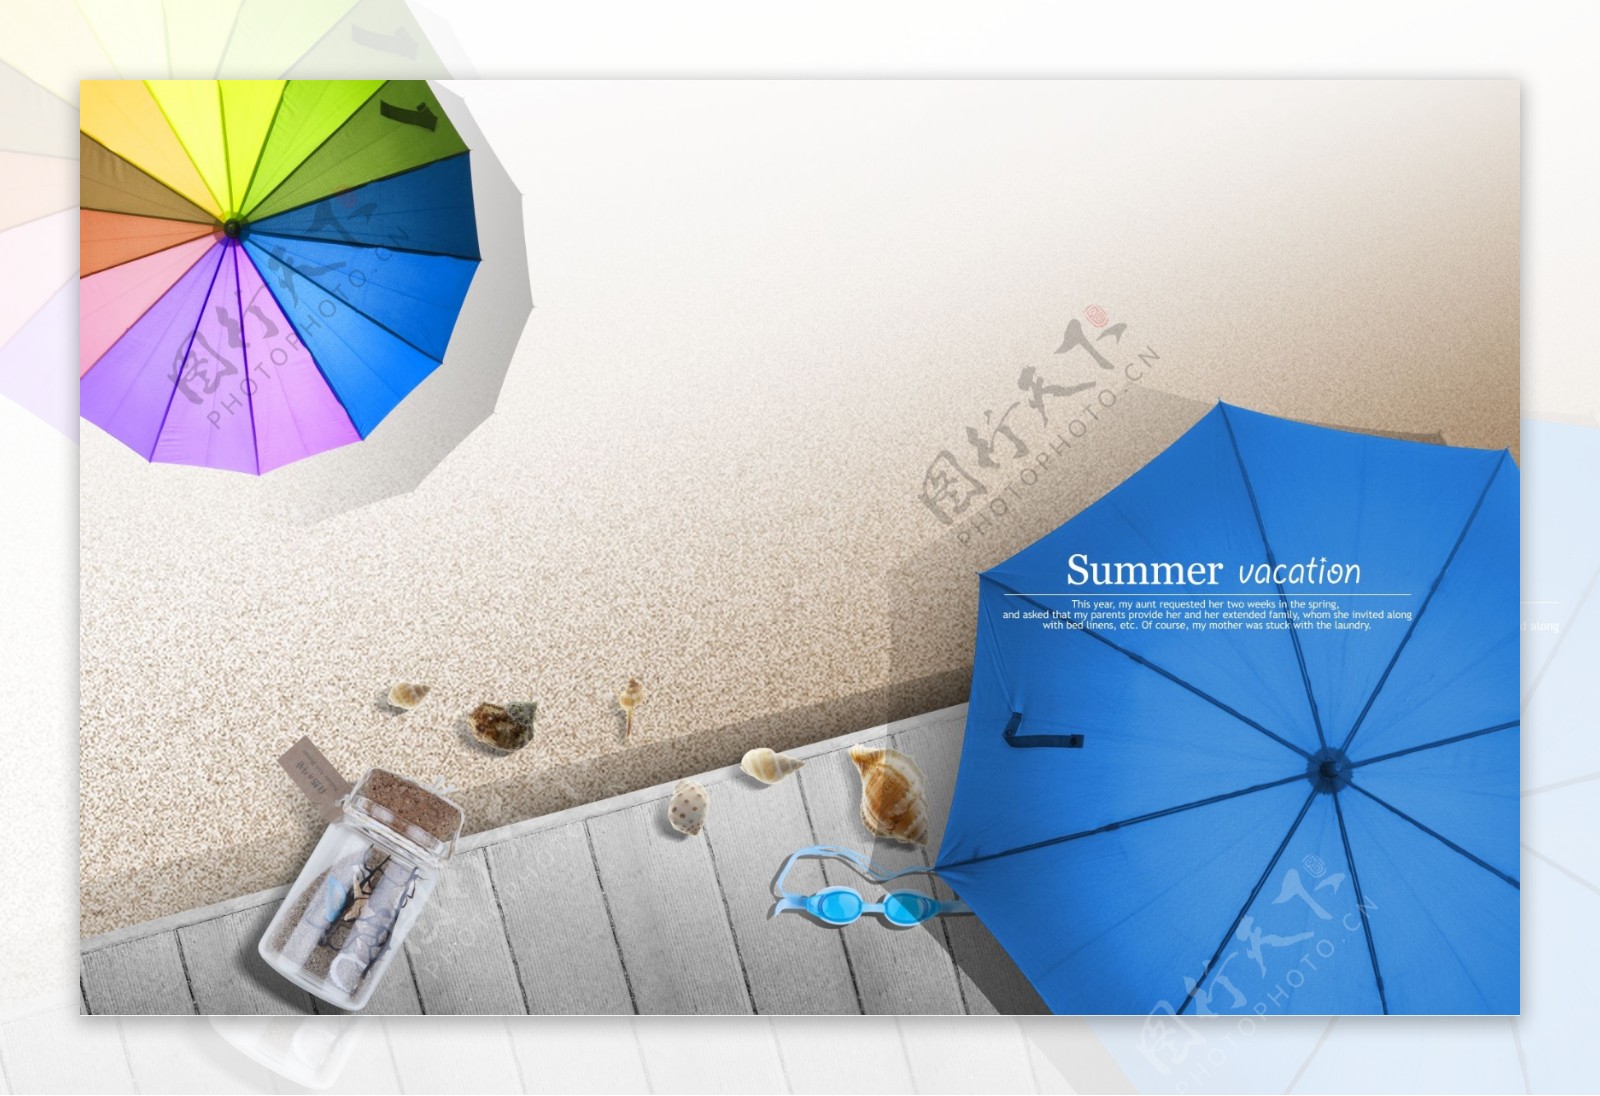 海滩上的彩色和蓝色遮阳伞